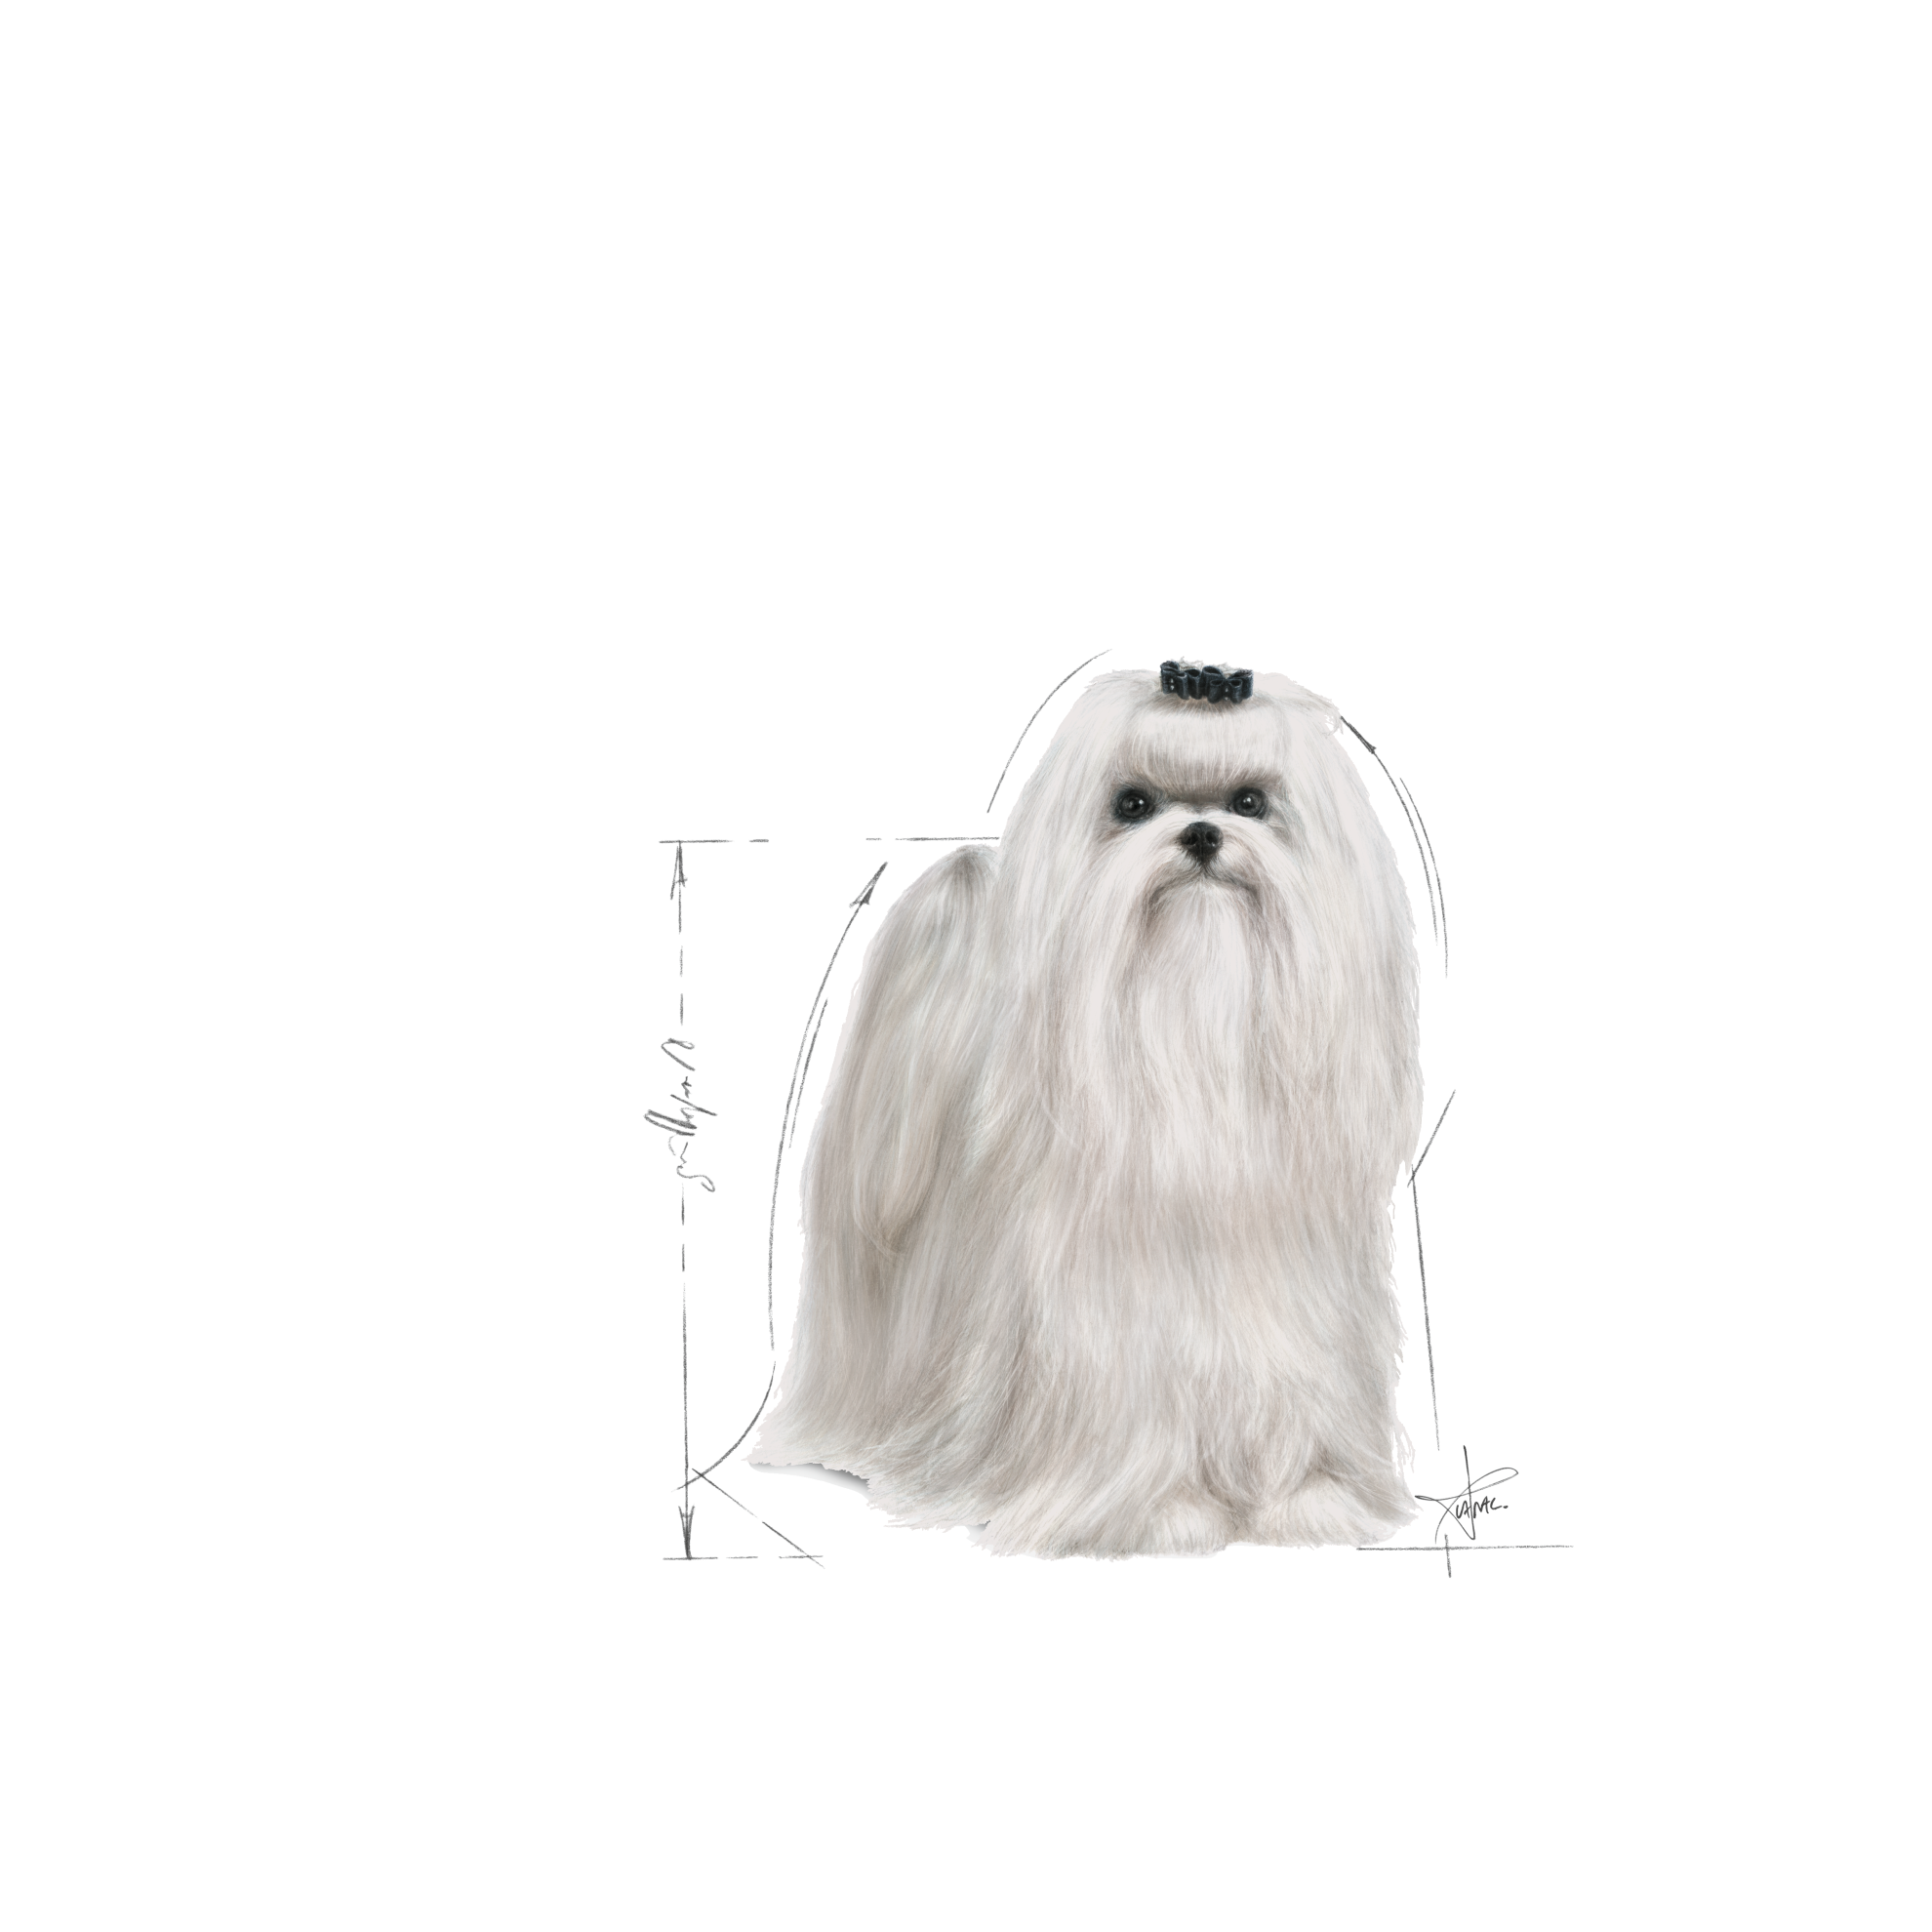 Malteser  Royal Canin DE